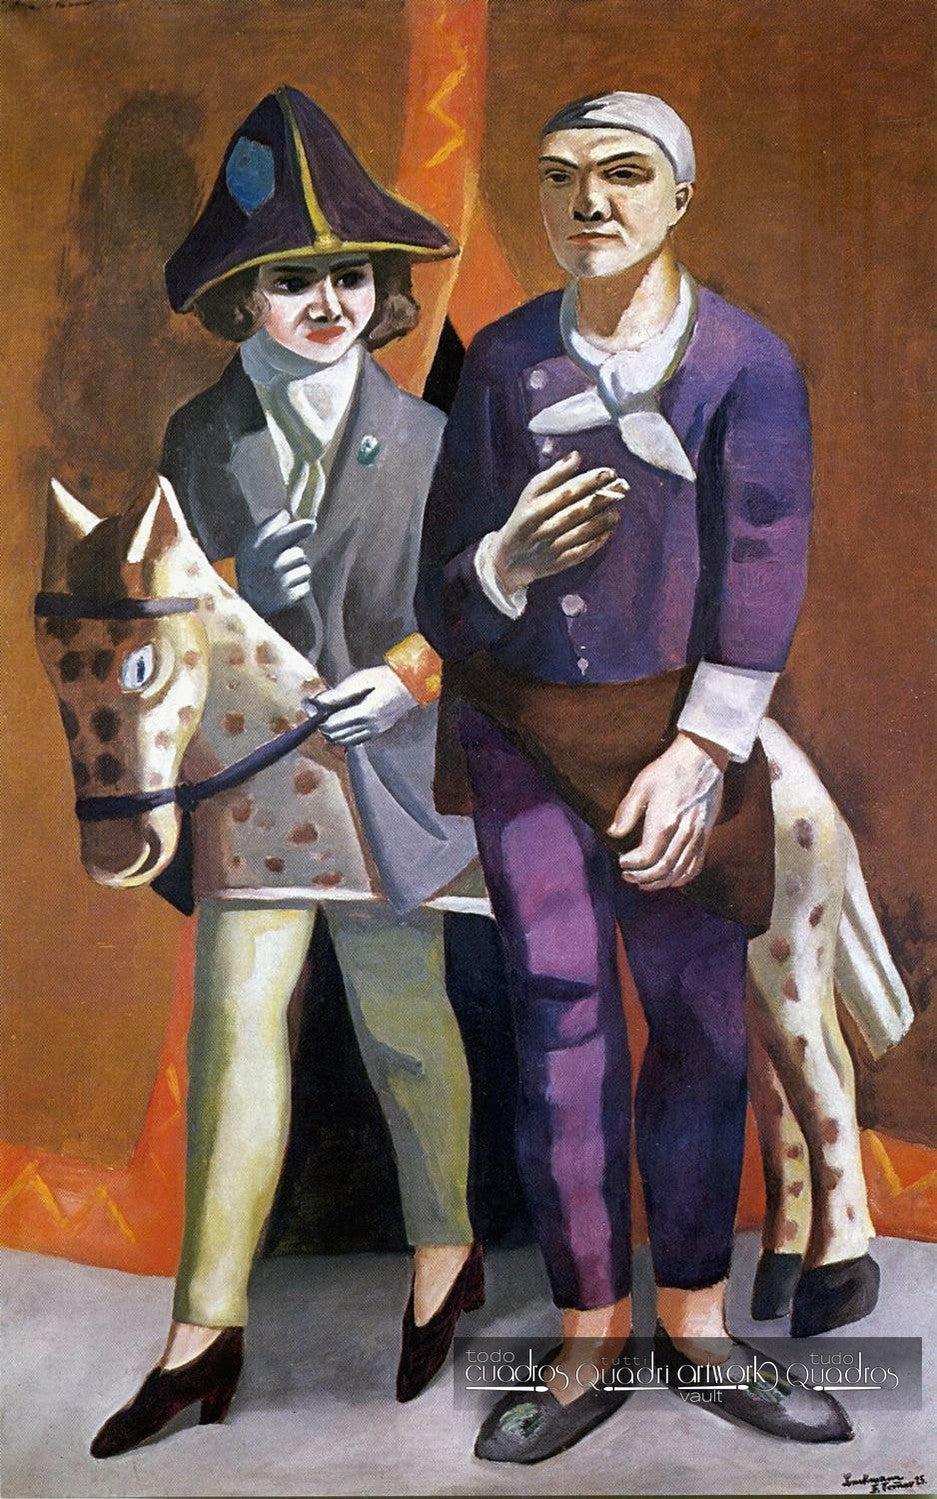 L'artista e sua moglie, Max Beckmann